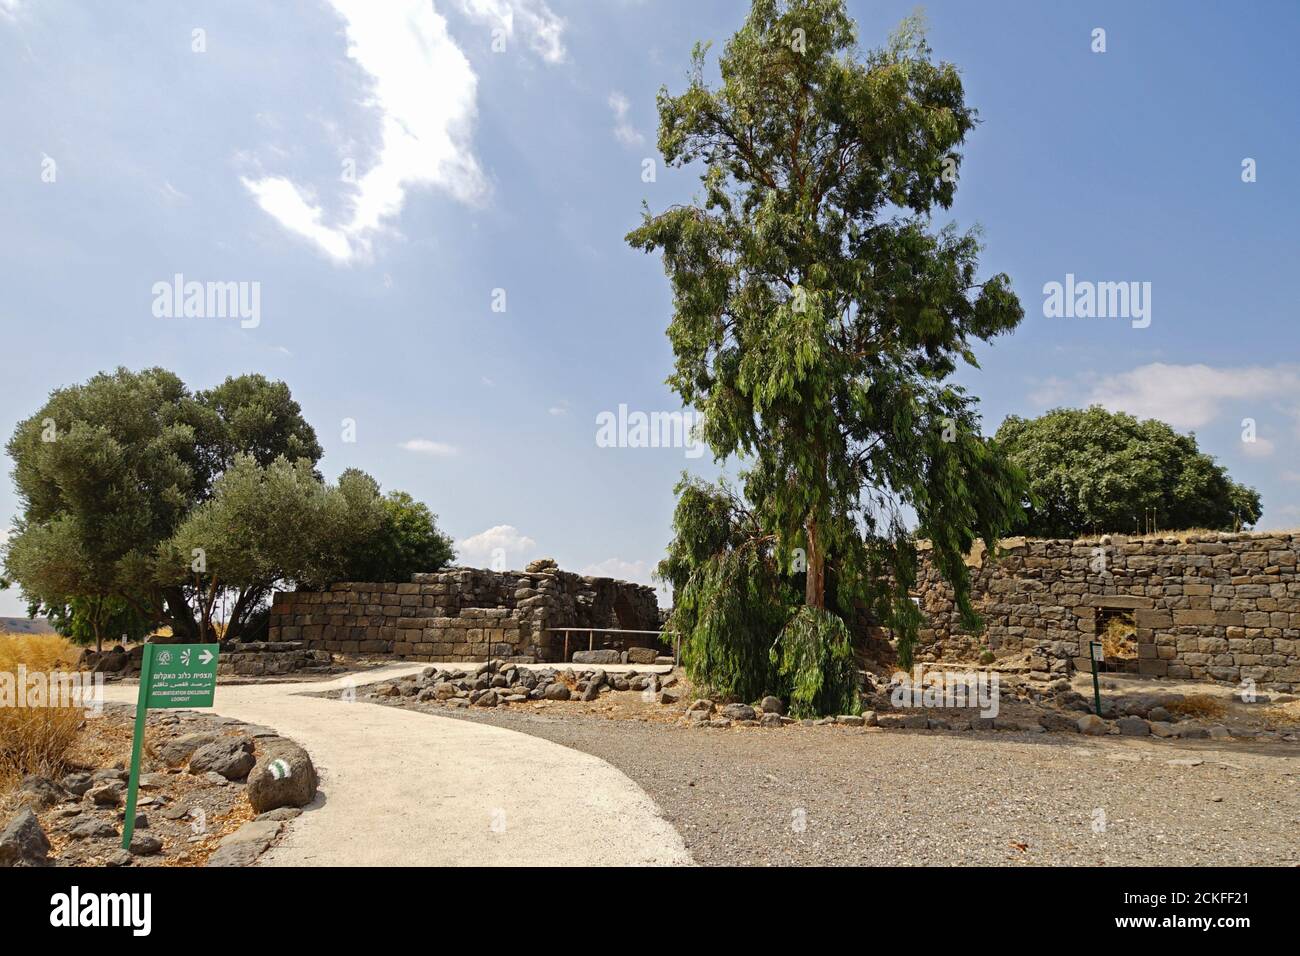 Période du deuxième Temple de Gamla, ancienne ville juive et réserve naturelle sur les hauteurs du Golan, Israël Banque D'Images